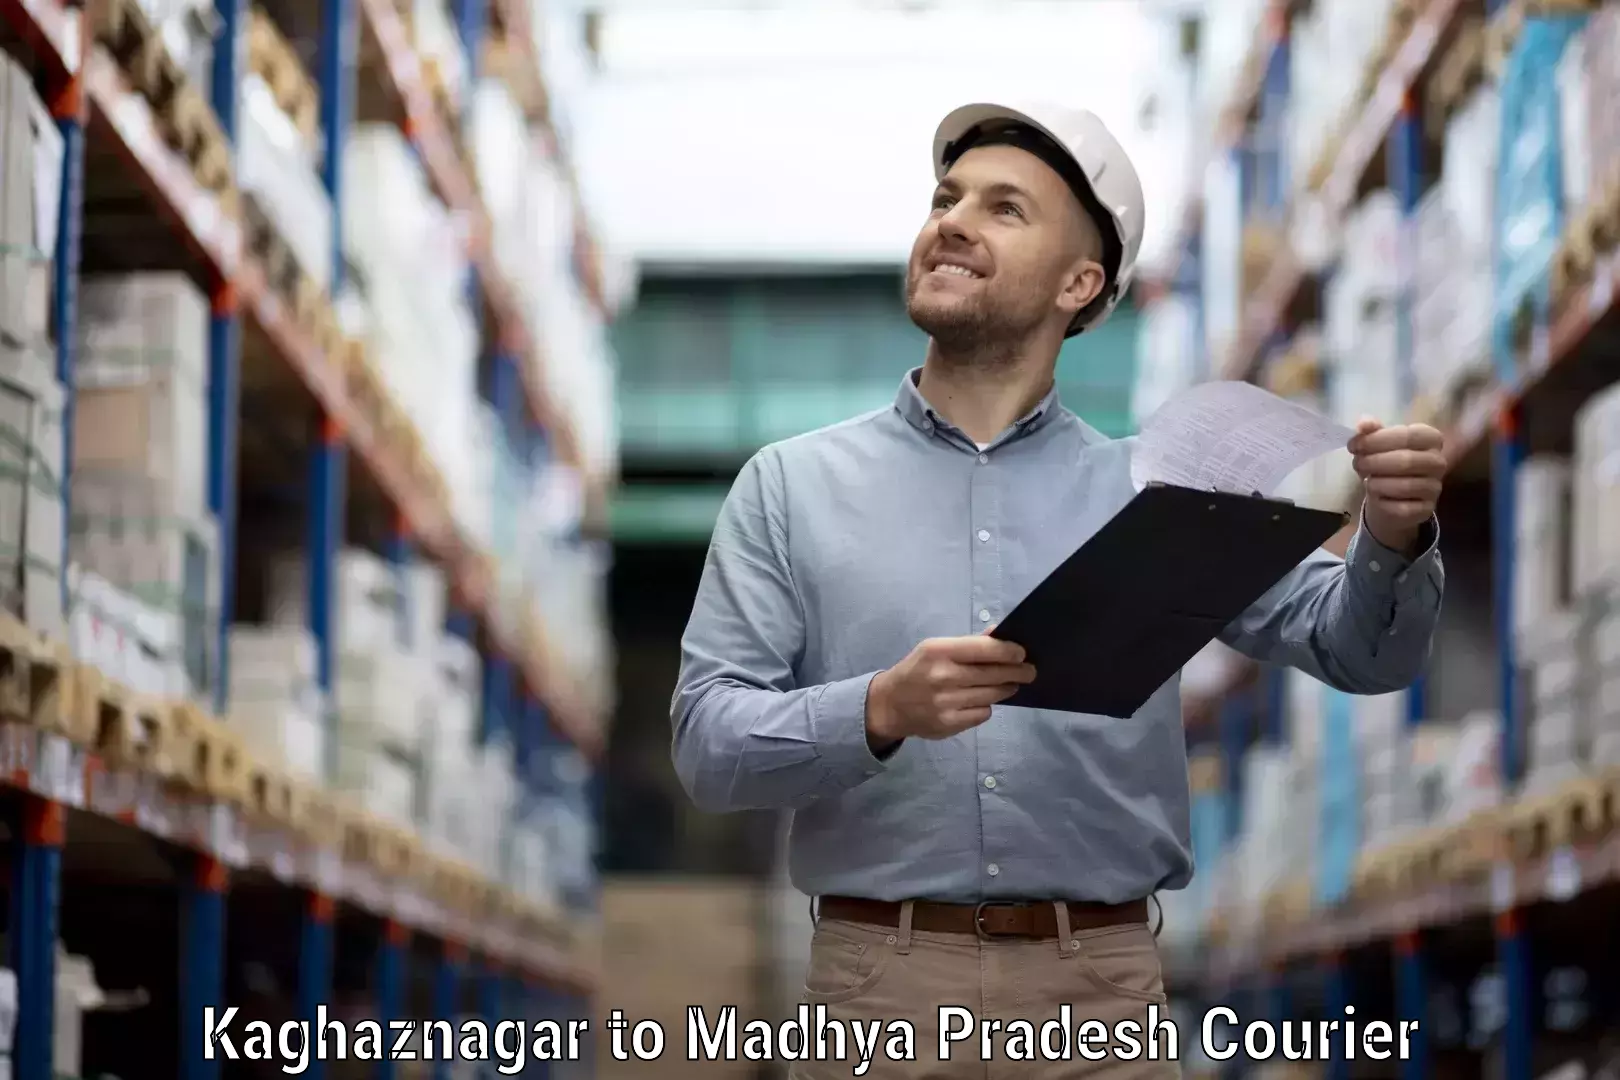 State-of-the-art courier technology Kaghaznagar to Jaisinghnagar